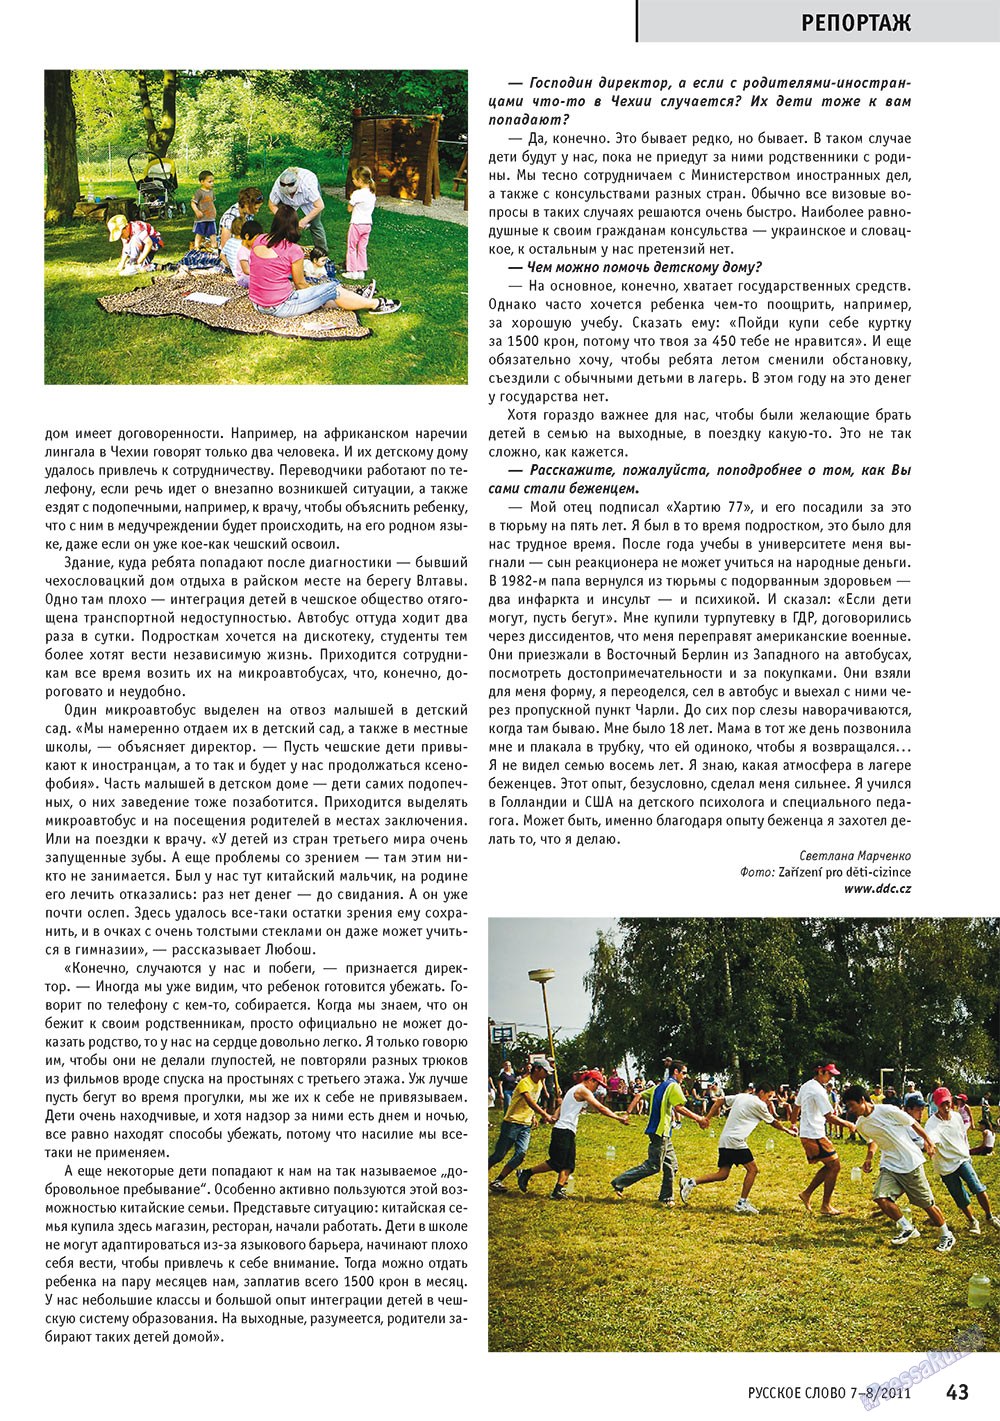 Русское слово, журнал. 2011 №7 стр.45